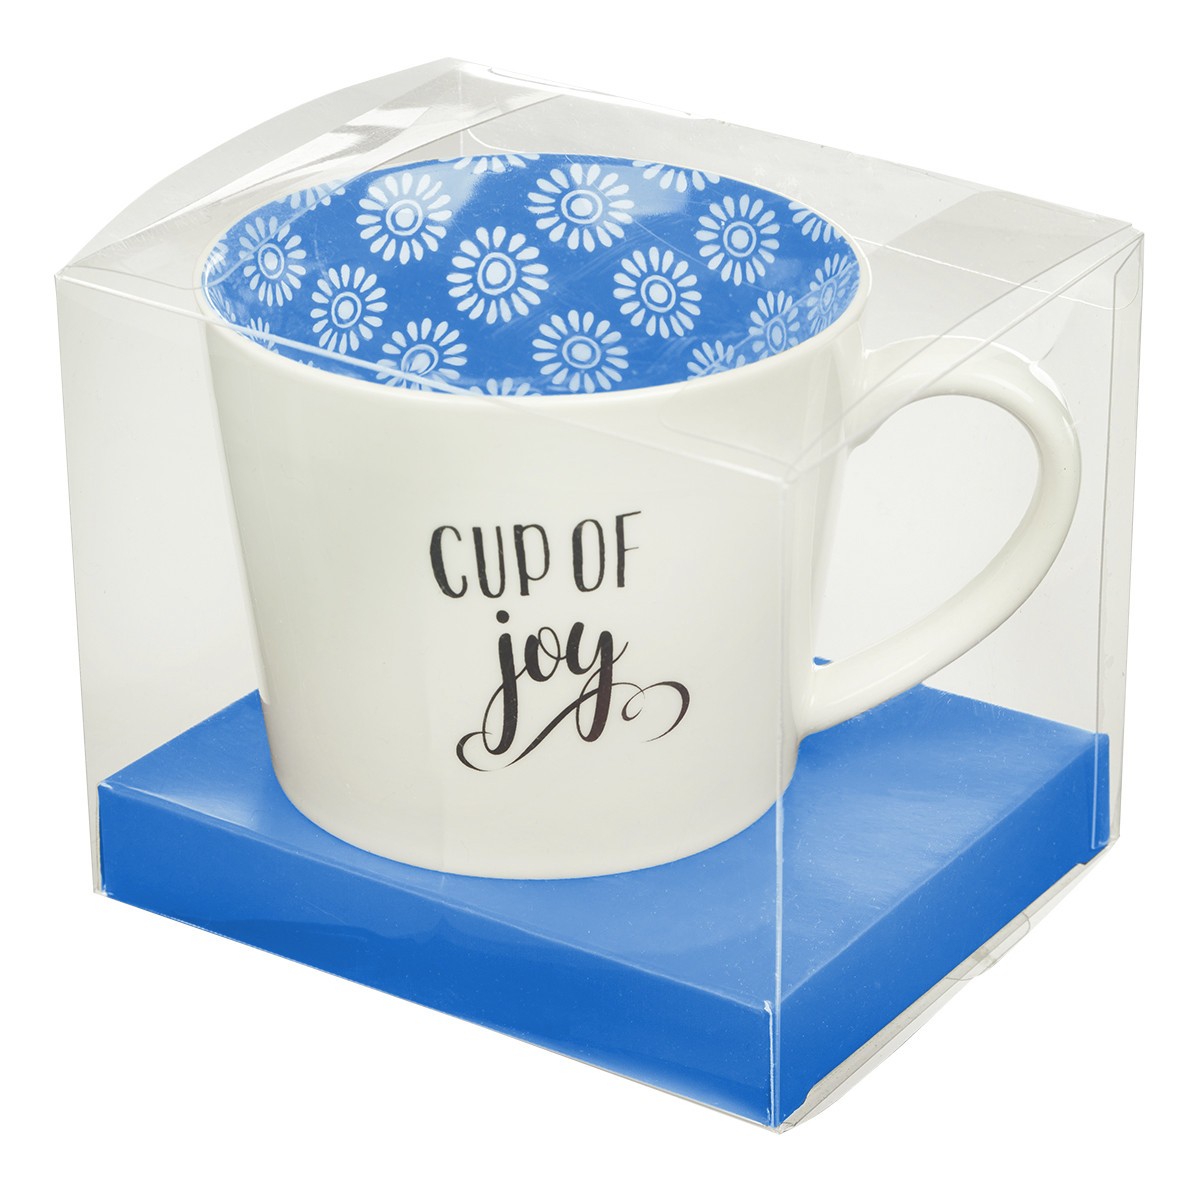 Cup of Joy